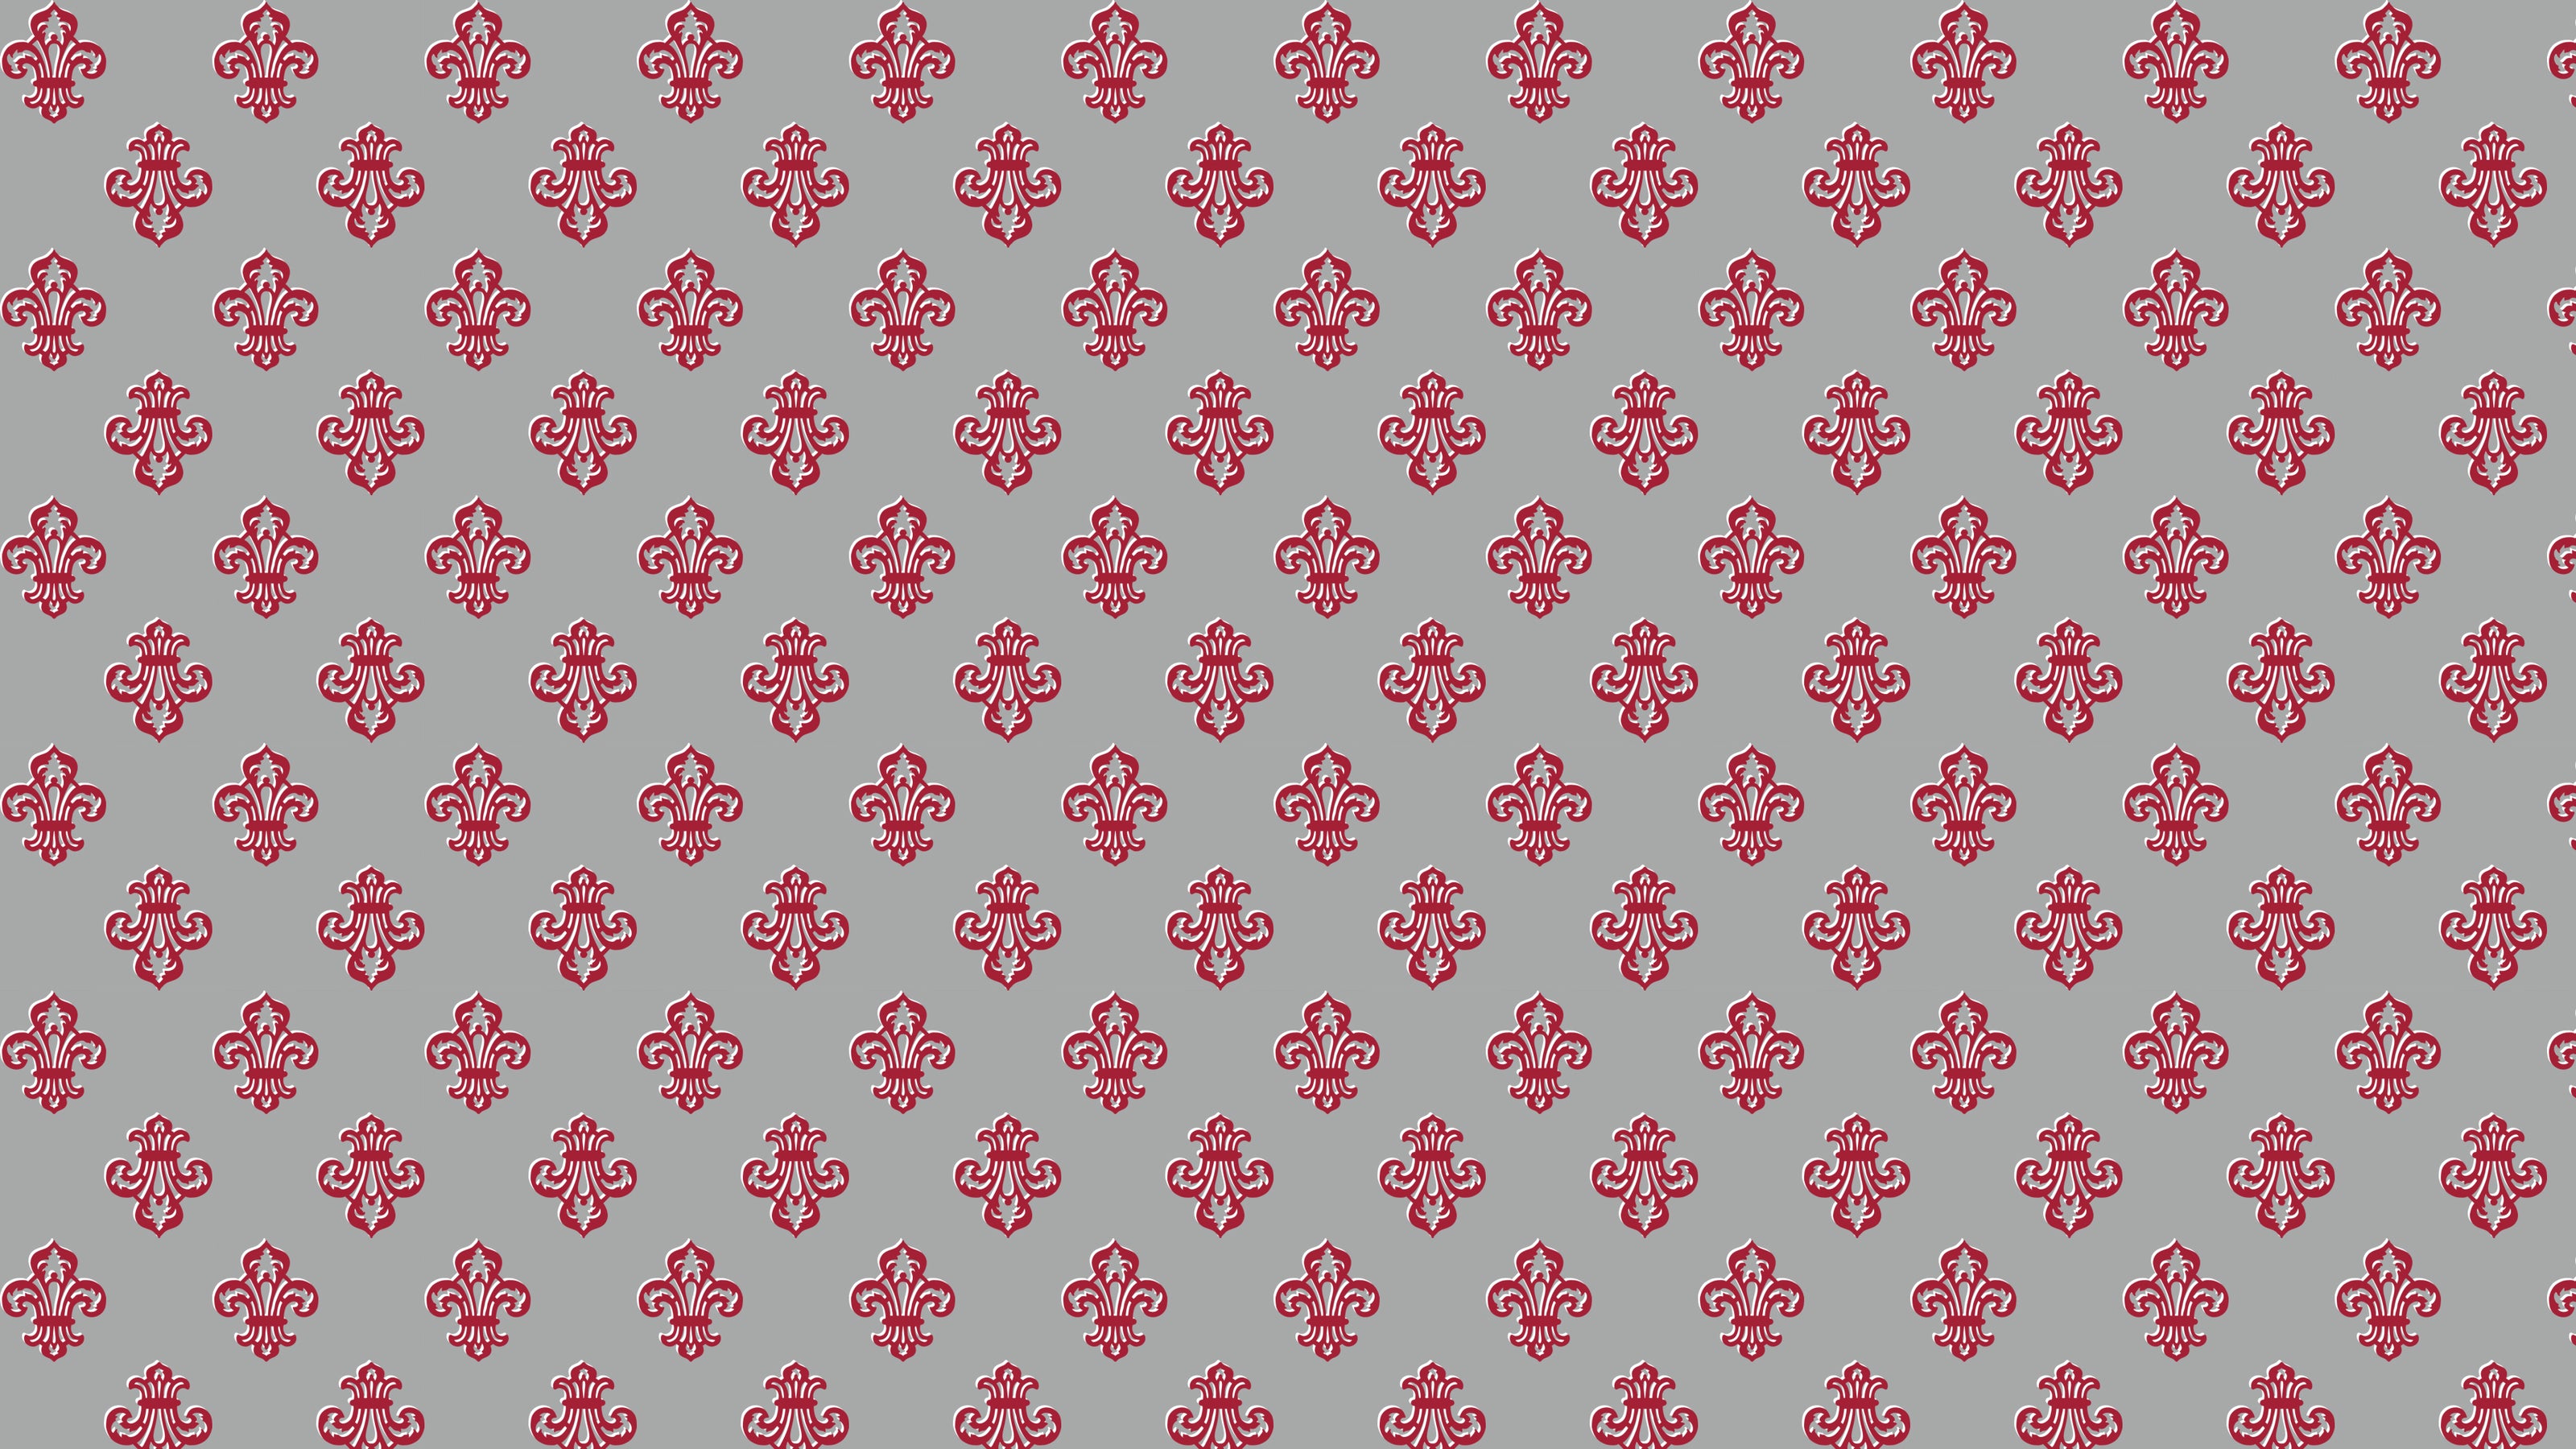 Fleur de Lis pattern in red by Studio Ten Design